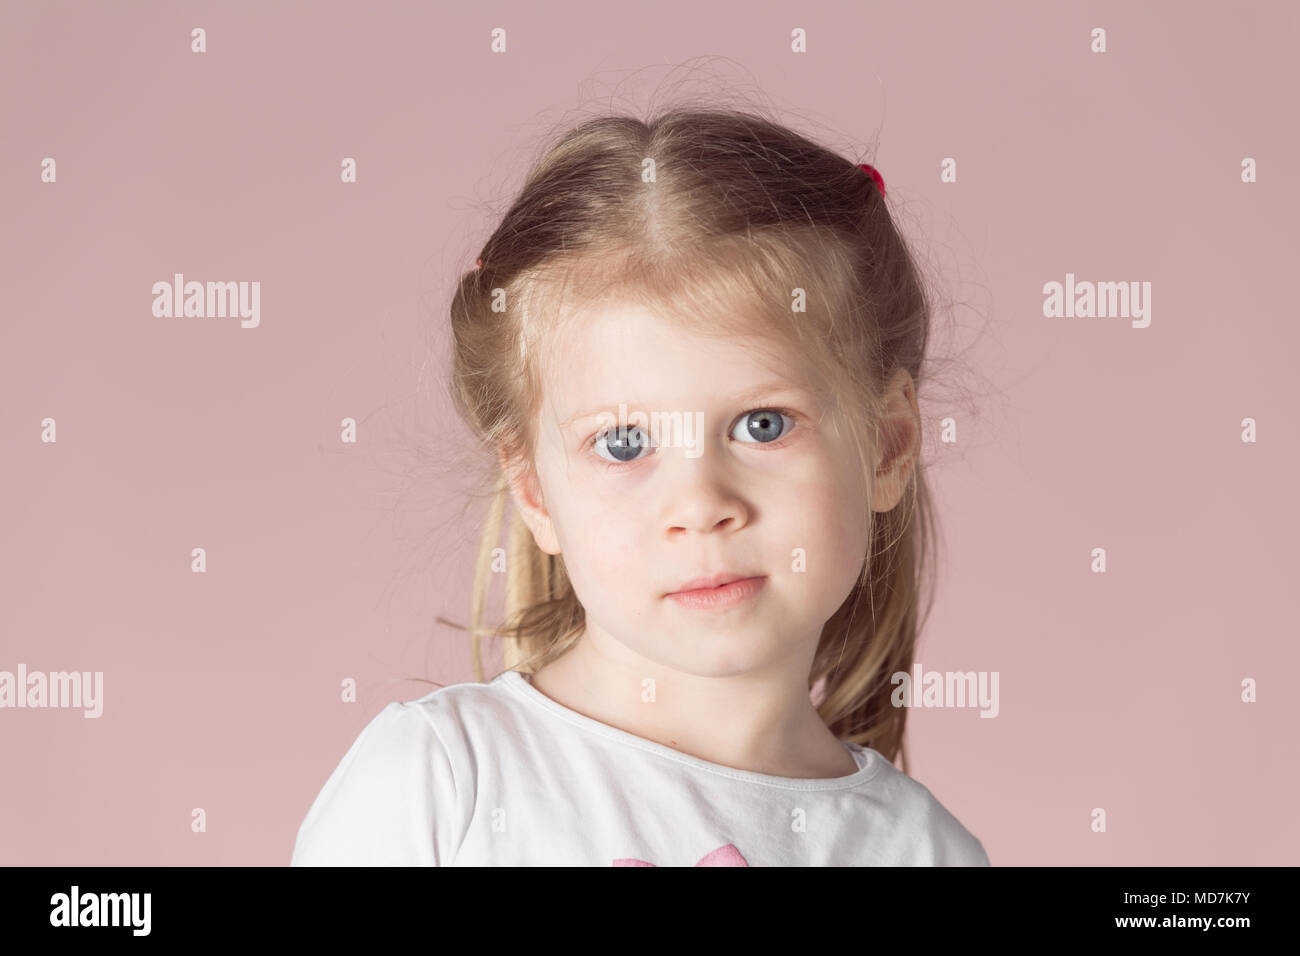 Caucasian girl blonde avec des cheveux ébouriffés. Portrait de petite fille sur fond rose. Banque D'Images